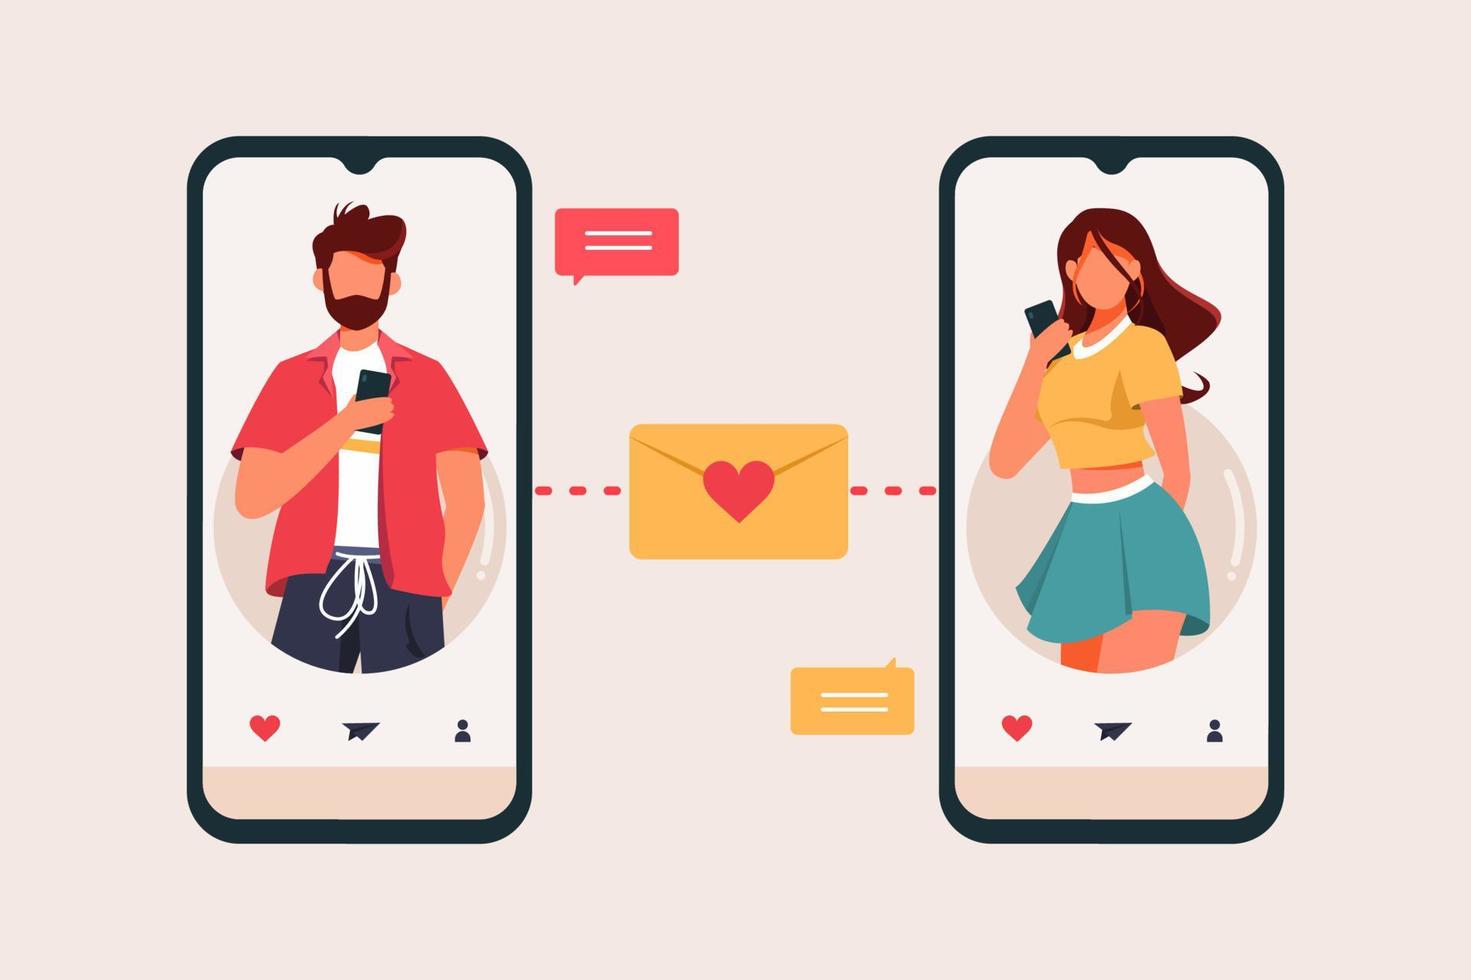 platt designkoncept för dejtingapp, män och kvinnor skickar meddelande med smartphone i vektorillustration för dejtingapp vektor